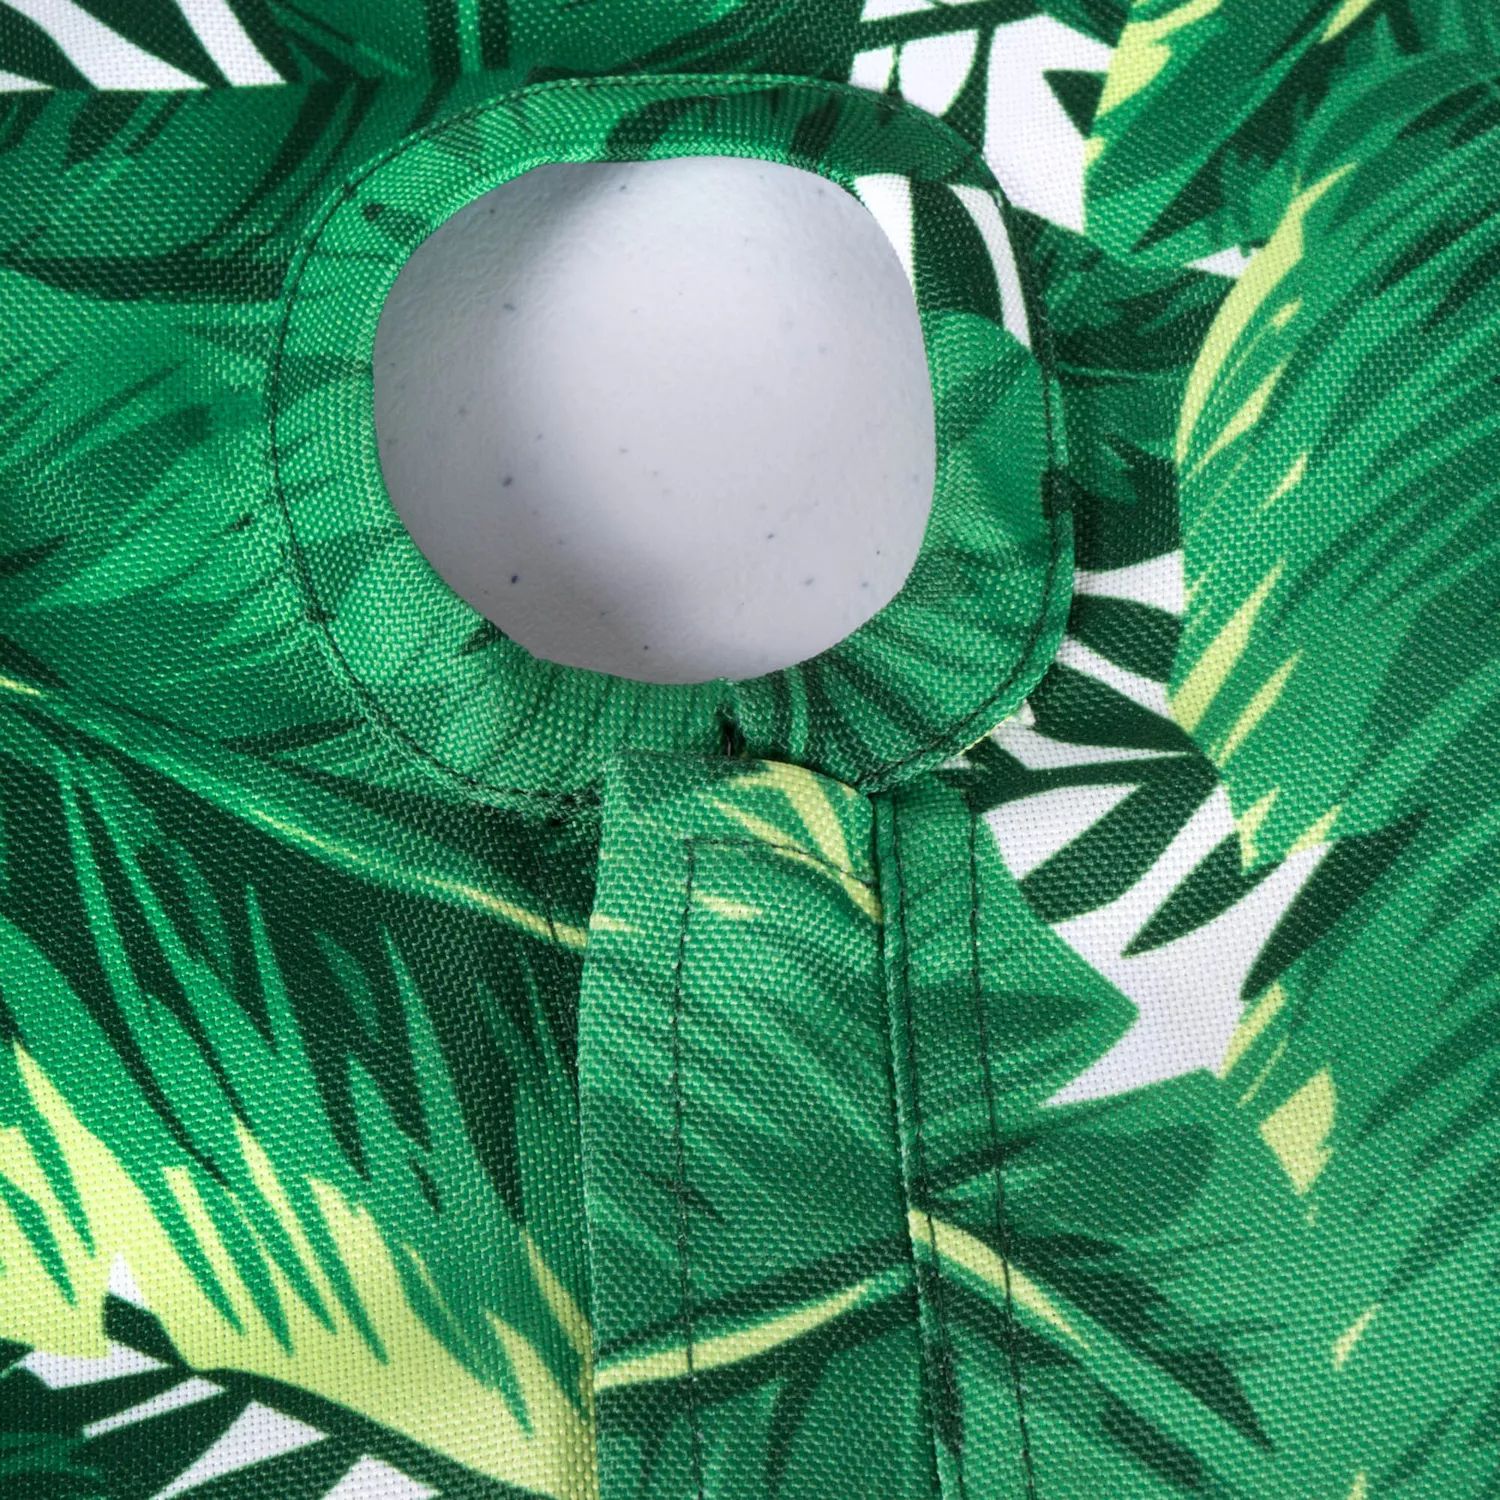 Зелено-белая круглая скатерть с банановым листом и застежкой-молнией шириной 60 дюймов.